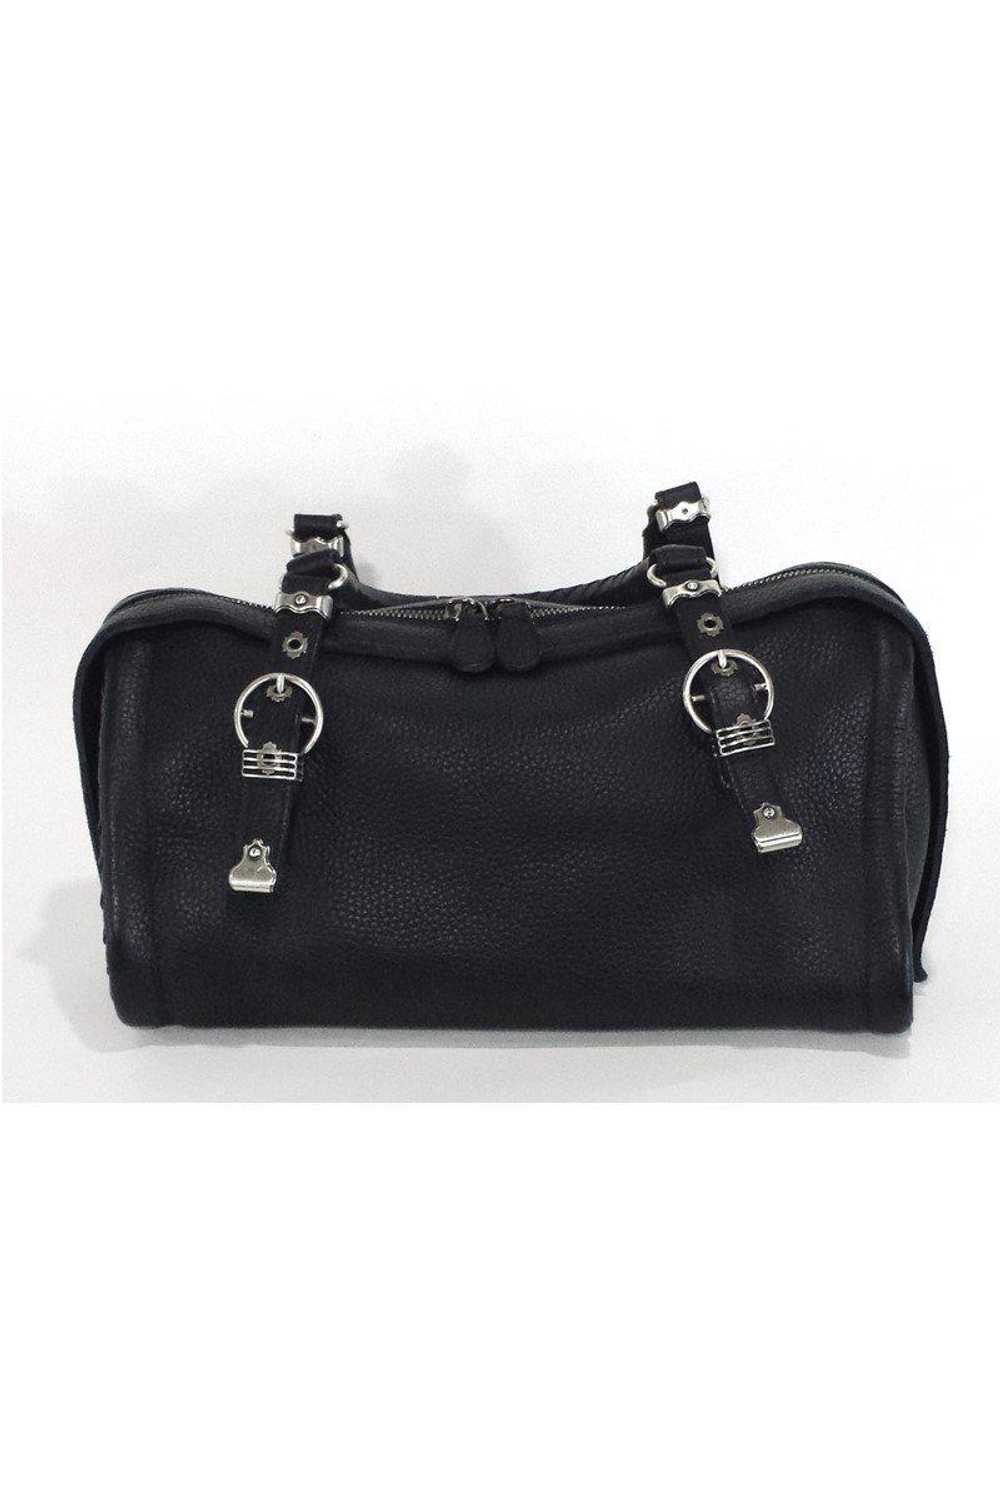 Bottega Veneta - Black Pebbled Leather Handbag - image 3